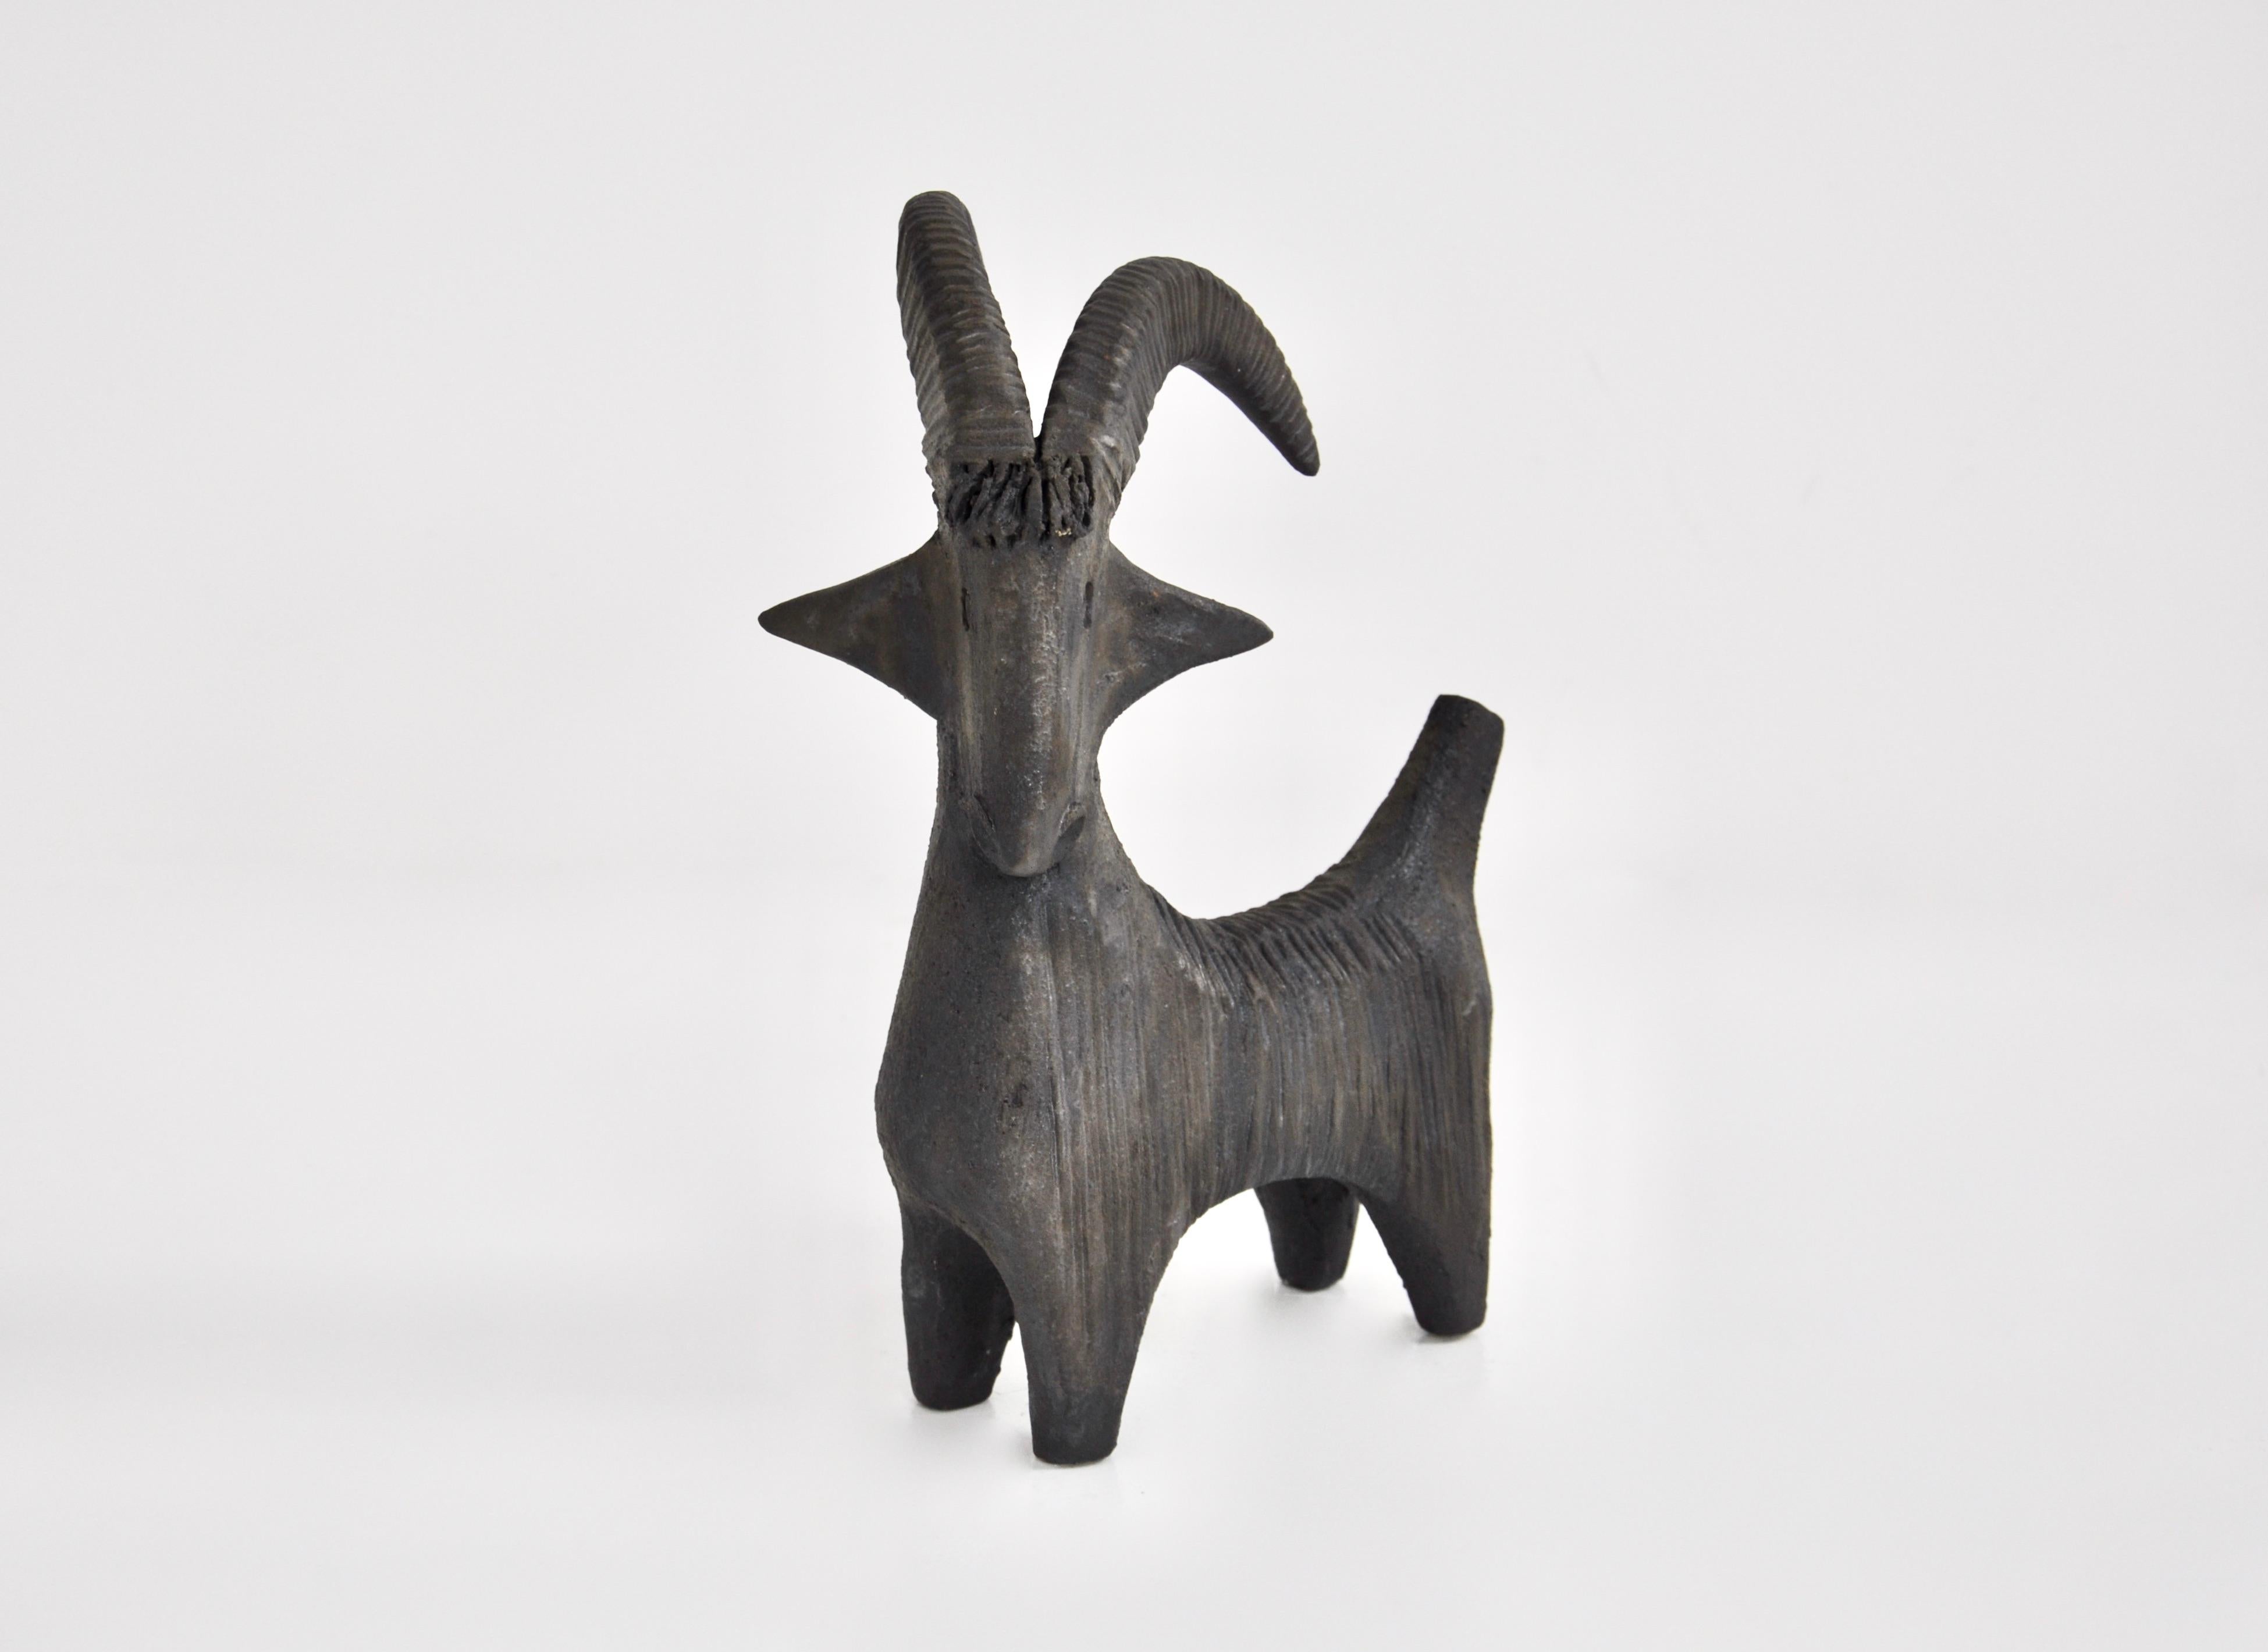  Keramik in Form einer Ziege, entworfen von Dominique Pouchain. Auf der Unterseite gestempelt.